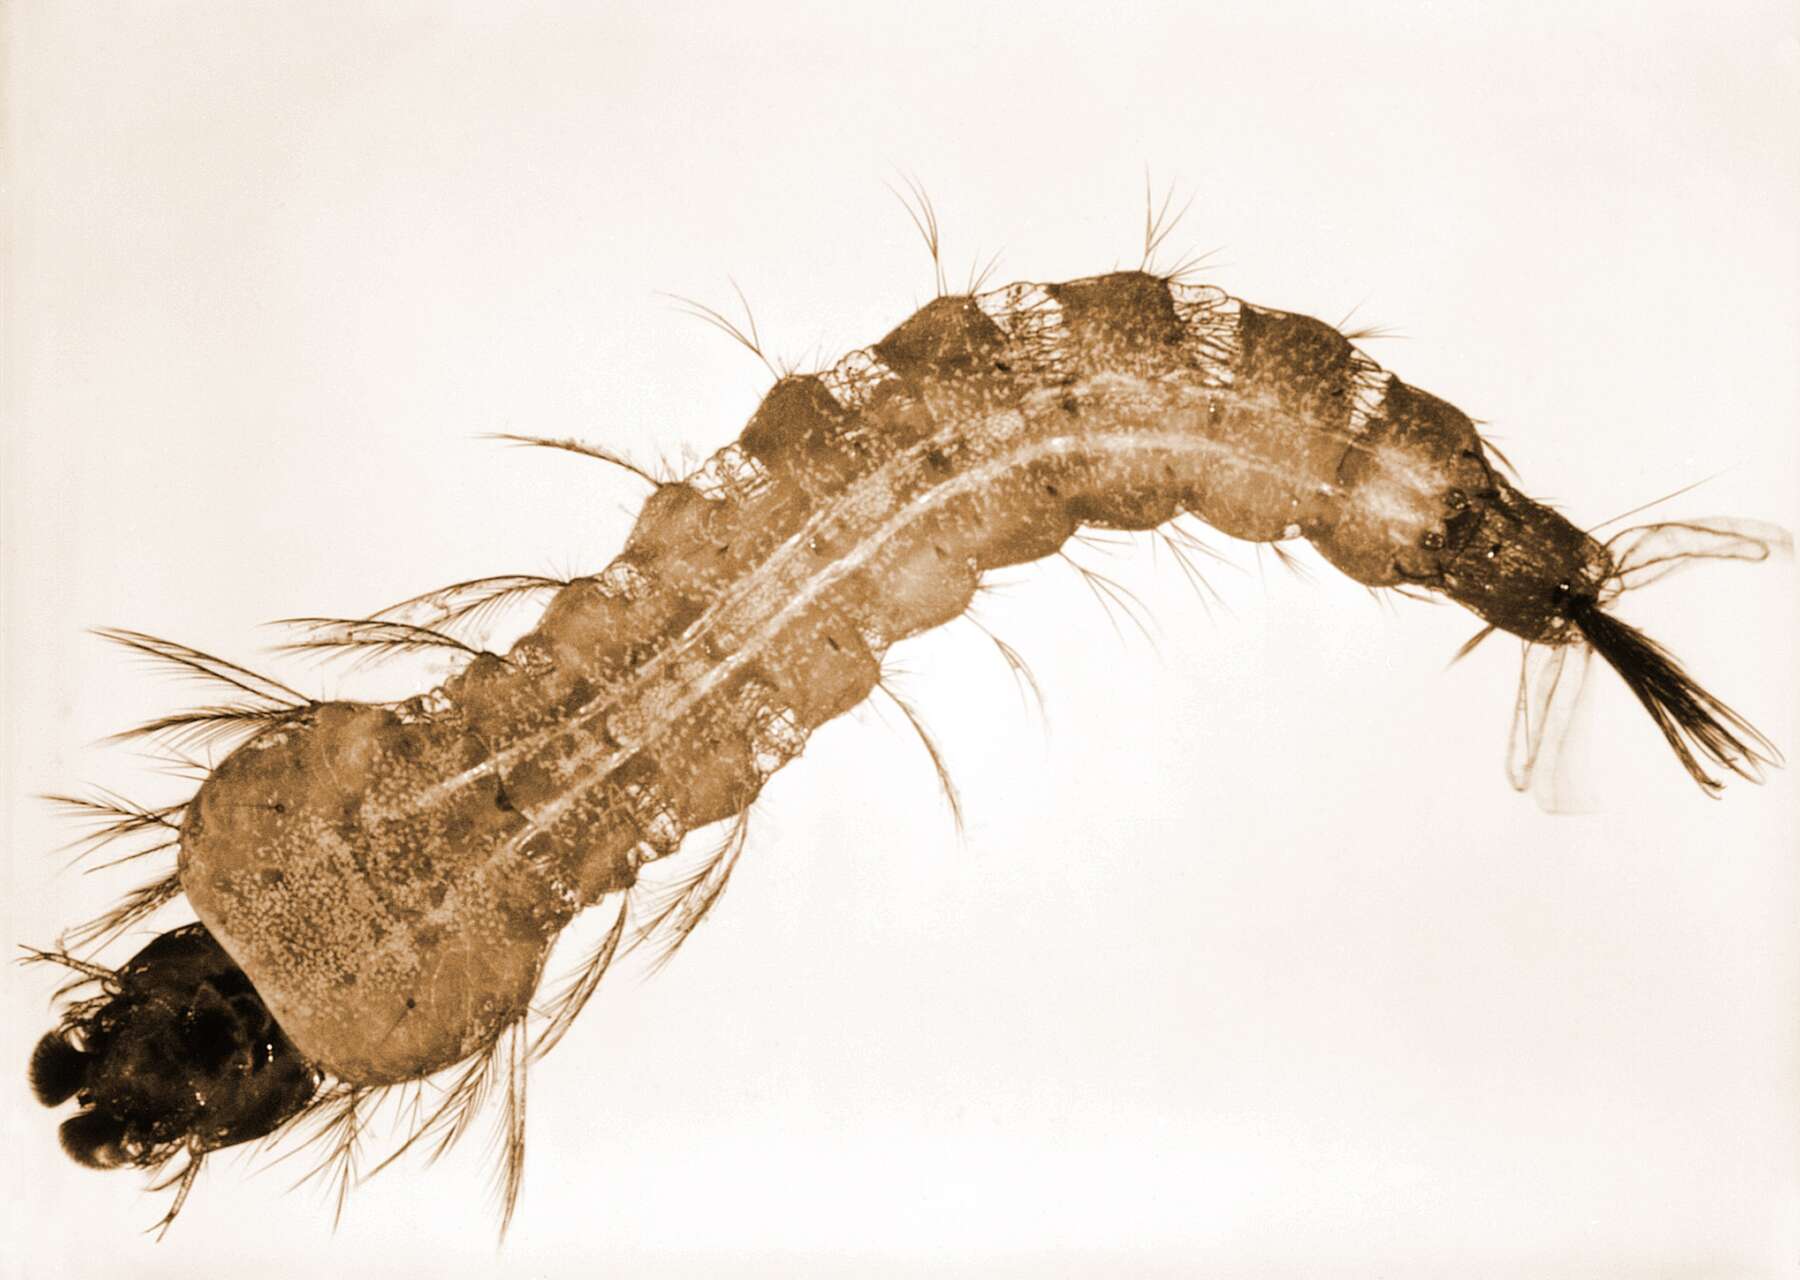 Anopheles mosquito larva Photo: Harry Weinburgh, CDC